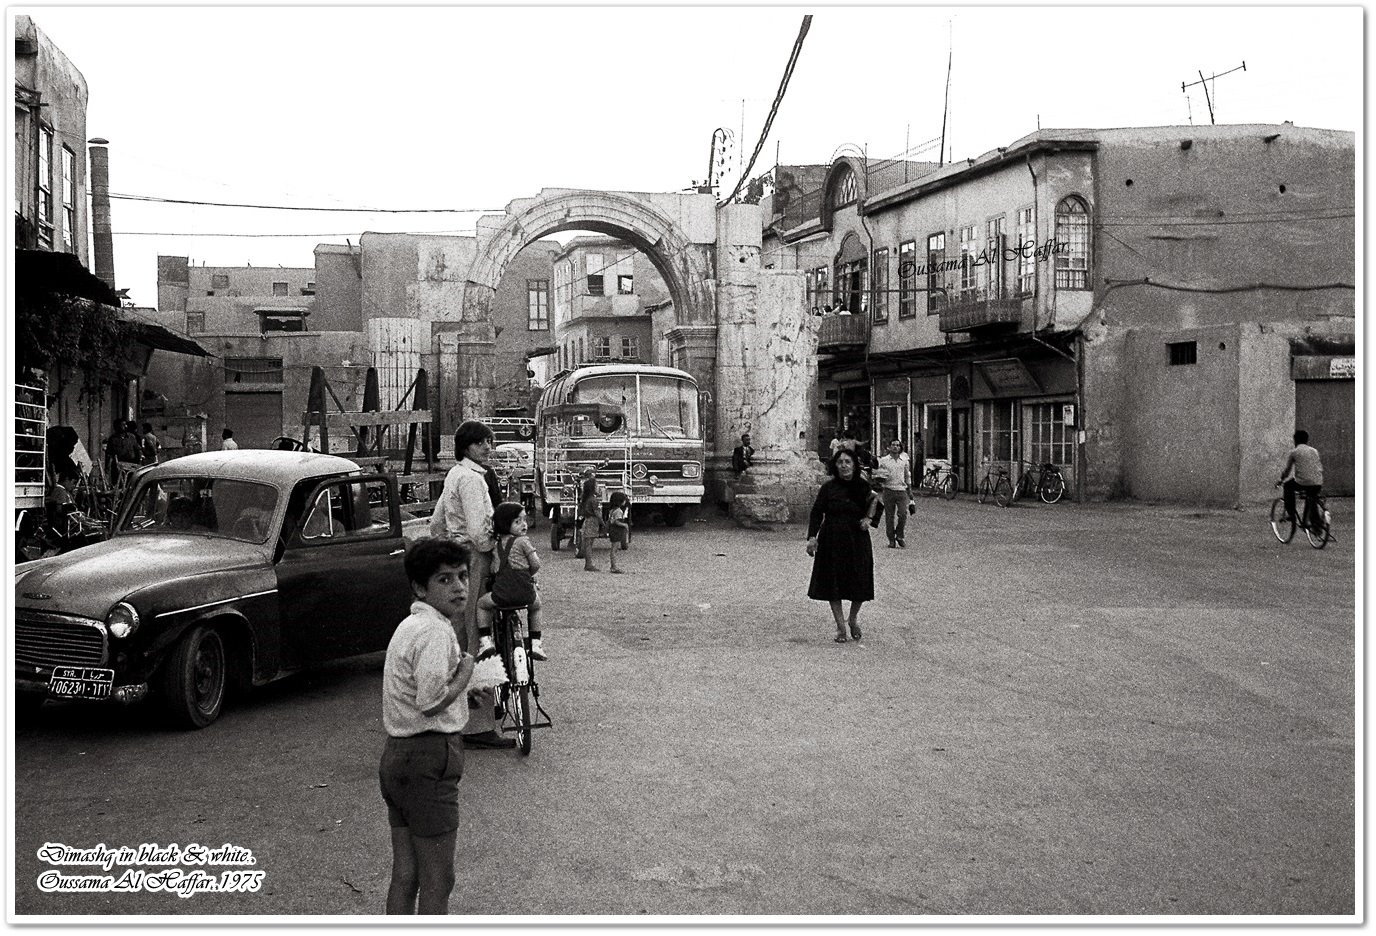 دمشق - طالع الفضة قوس التترابيل...1975